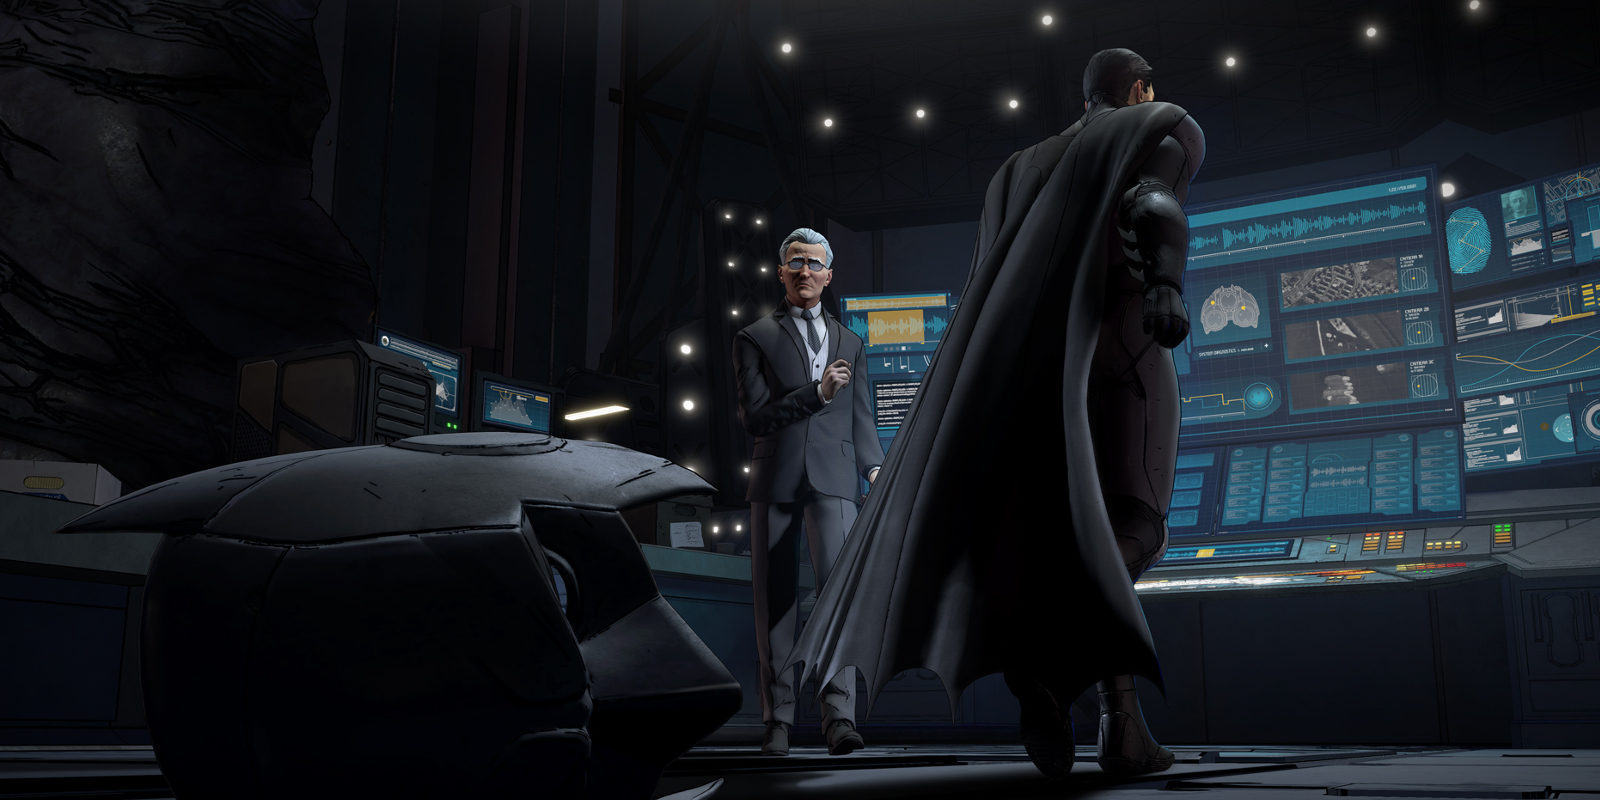 Análisis de 'Batman: The Telltale Series' Episodio 5 - Ciudad de la Luz para PS4 y conclusiones finales